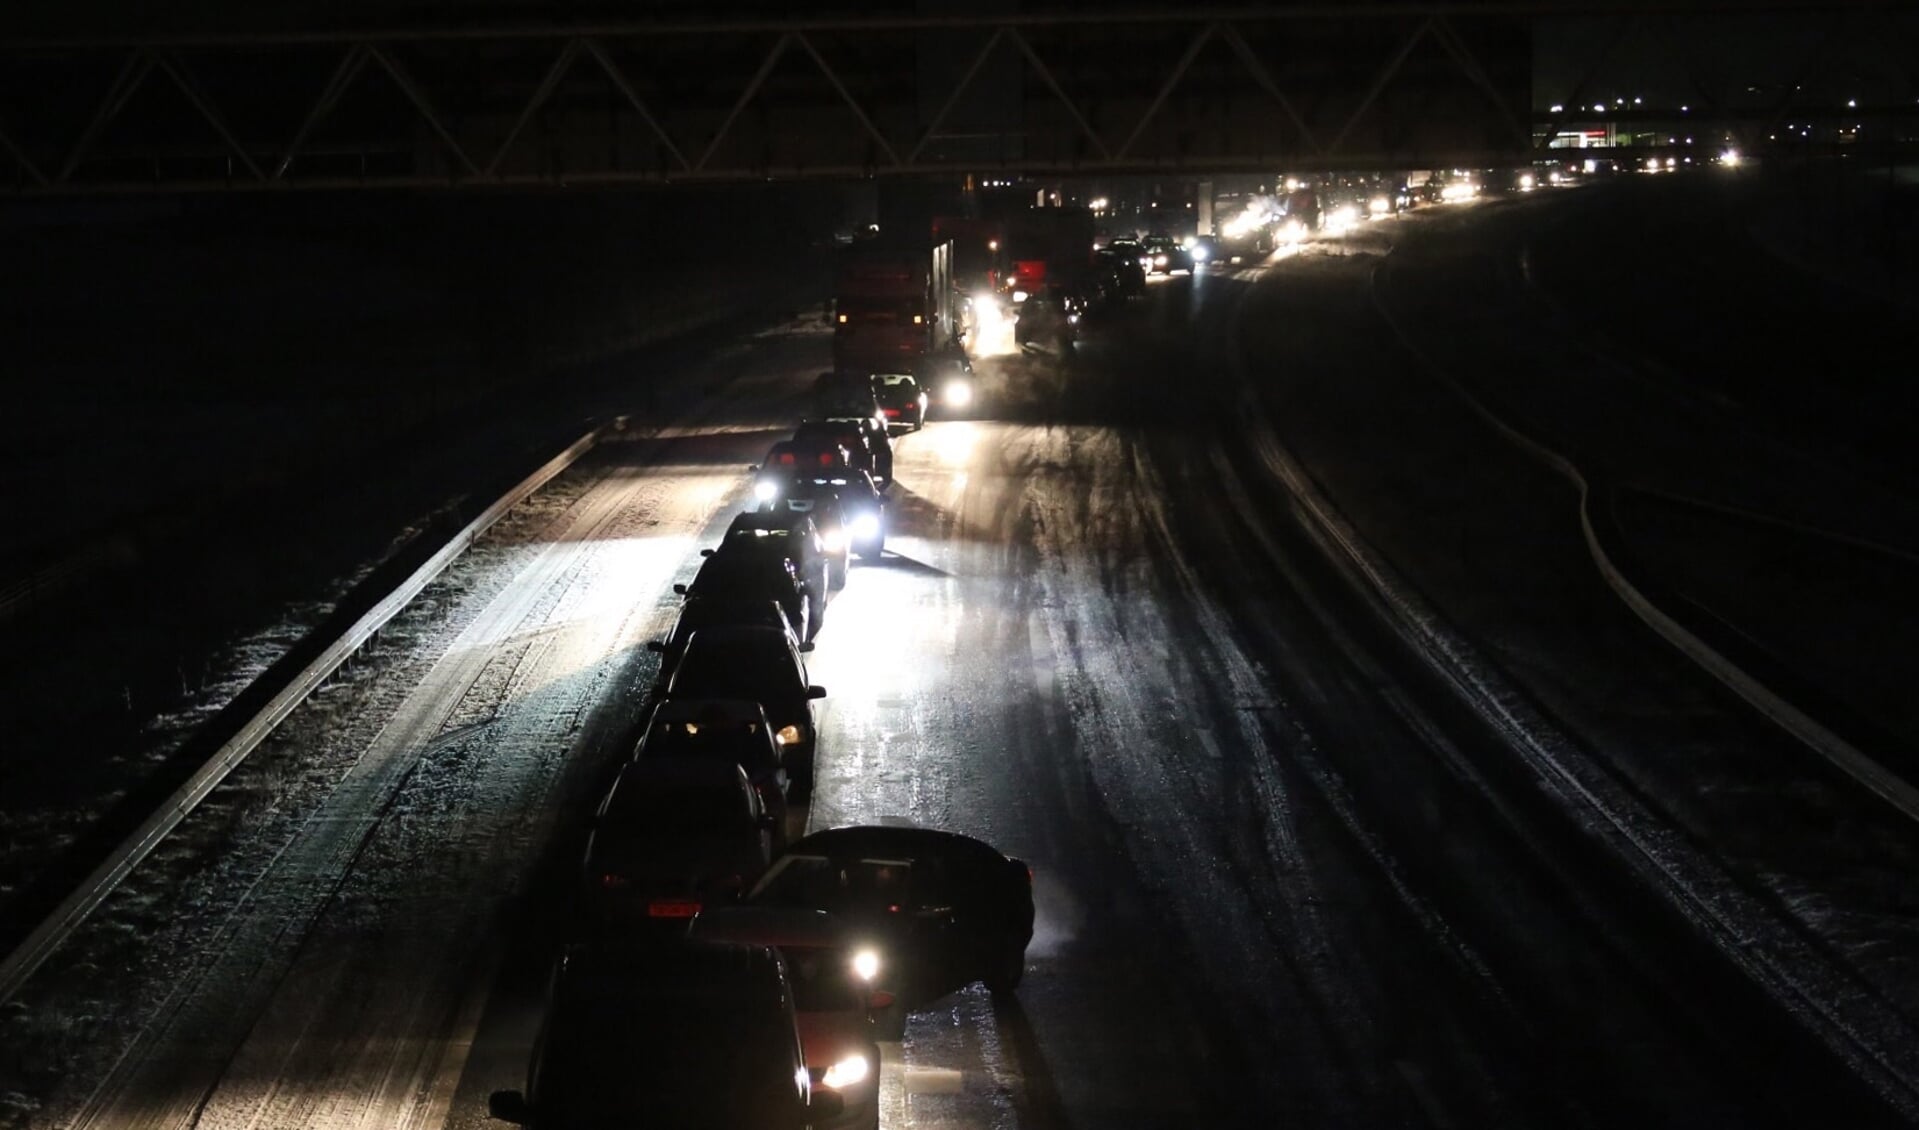 Van de ene op de andere dag een donkere avondspits. Dat verhoogt volgens experts (en cijfers) het risico op verkeersongelukken.